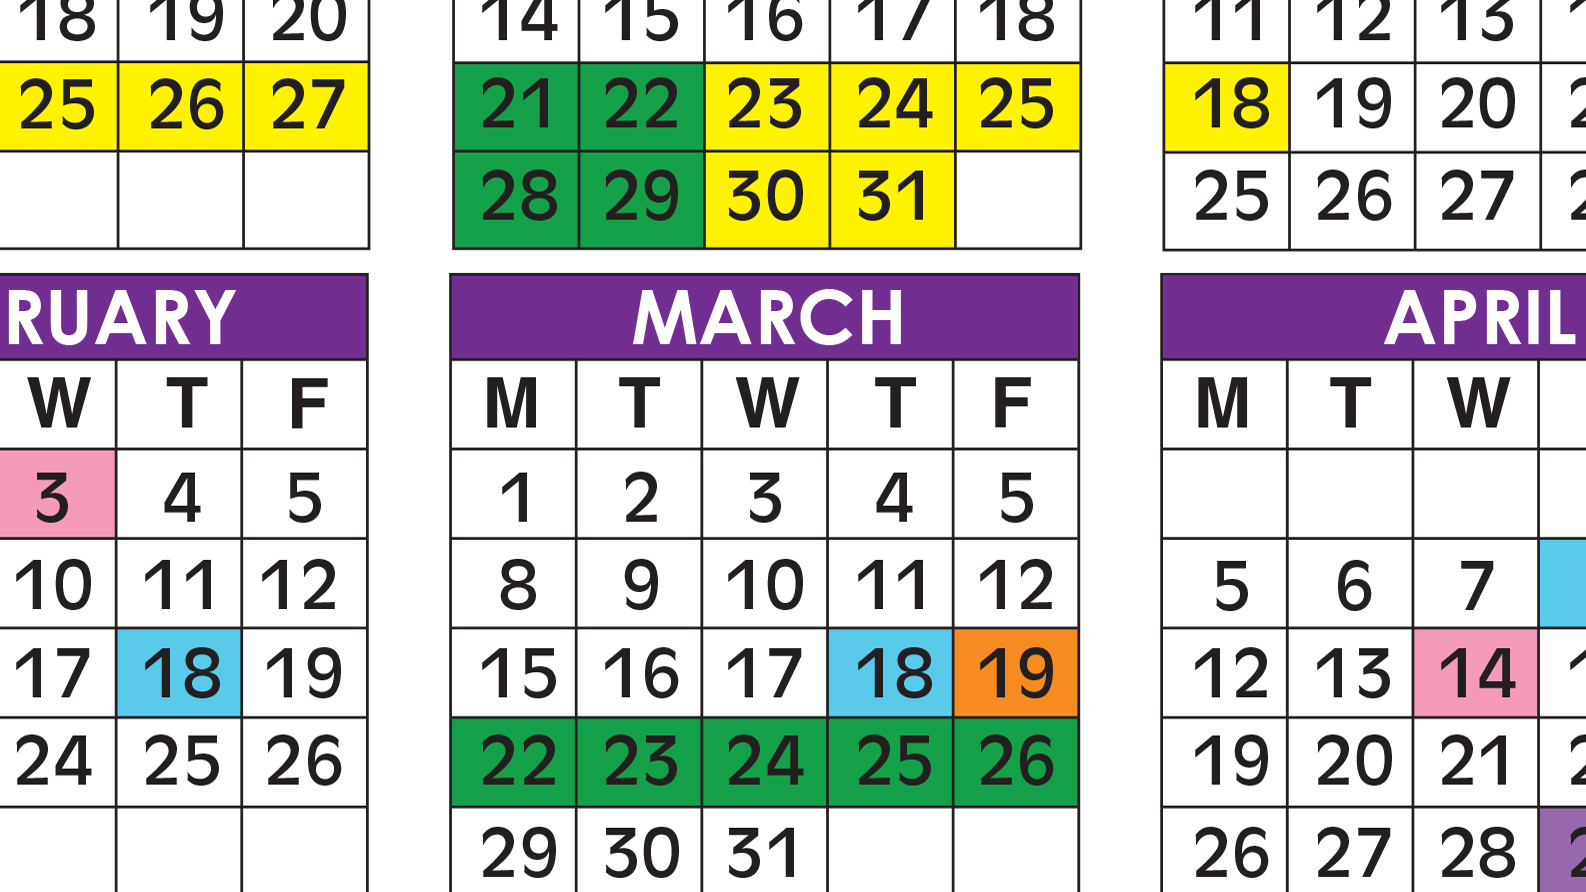 Broward School Calendar 2021 Official 2020/21 Broward County Public Schools Color Calendar 